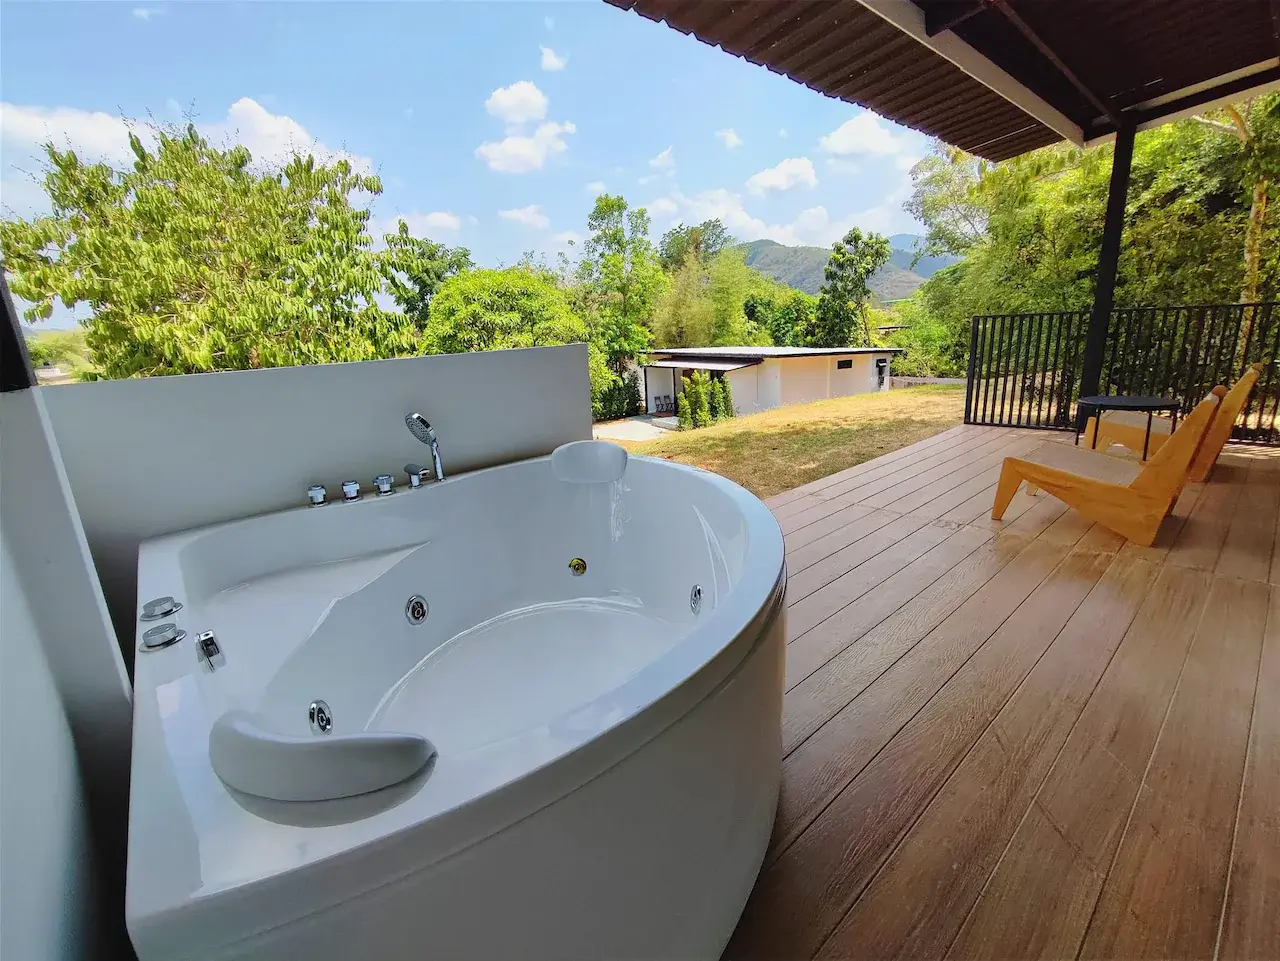 10 ที่พักสวนผึ้ง มีอ่างอาบน้ำสวยๆ พร้อมวิวธรรมชาติ!